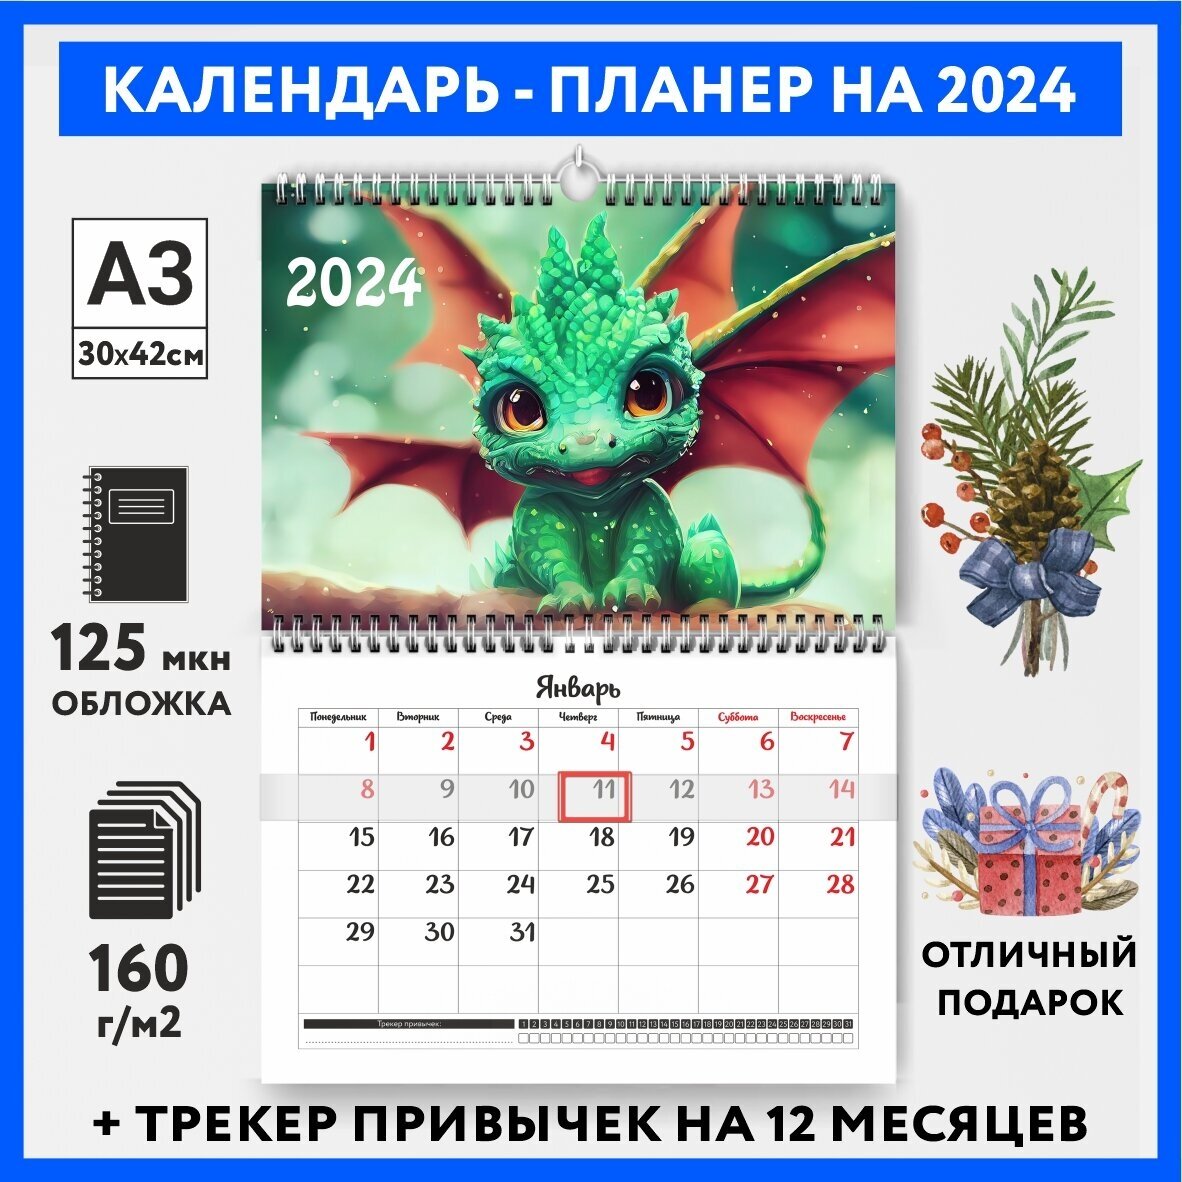 Календарь-планер А3 настенный с трекером привычек, символ года на 2024 год, Дракон #000 - №3, calendar_wall_dragon_#000_A3_3